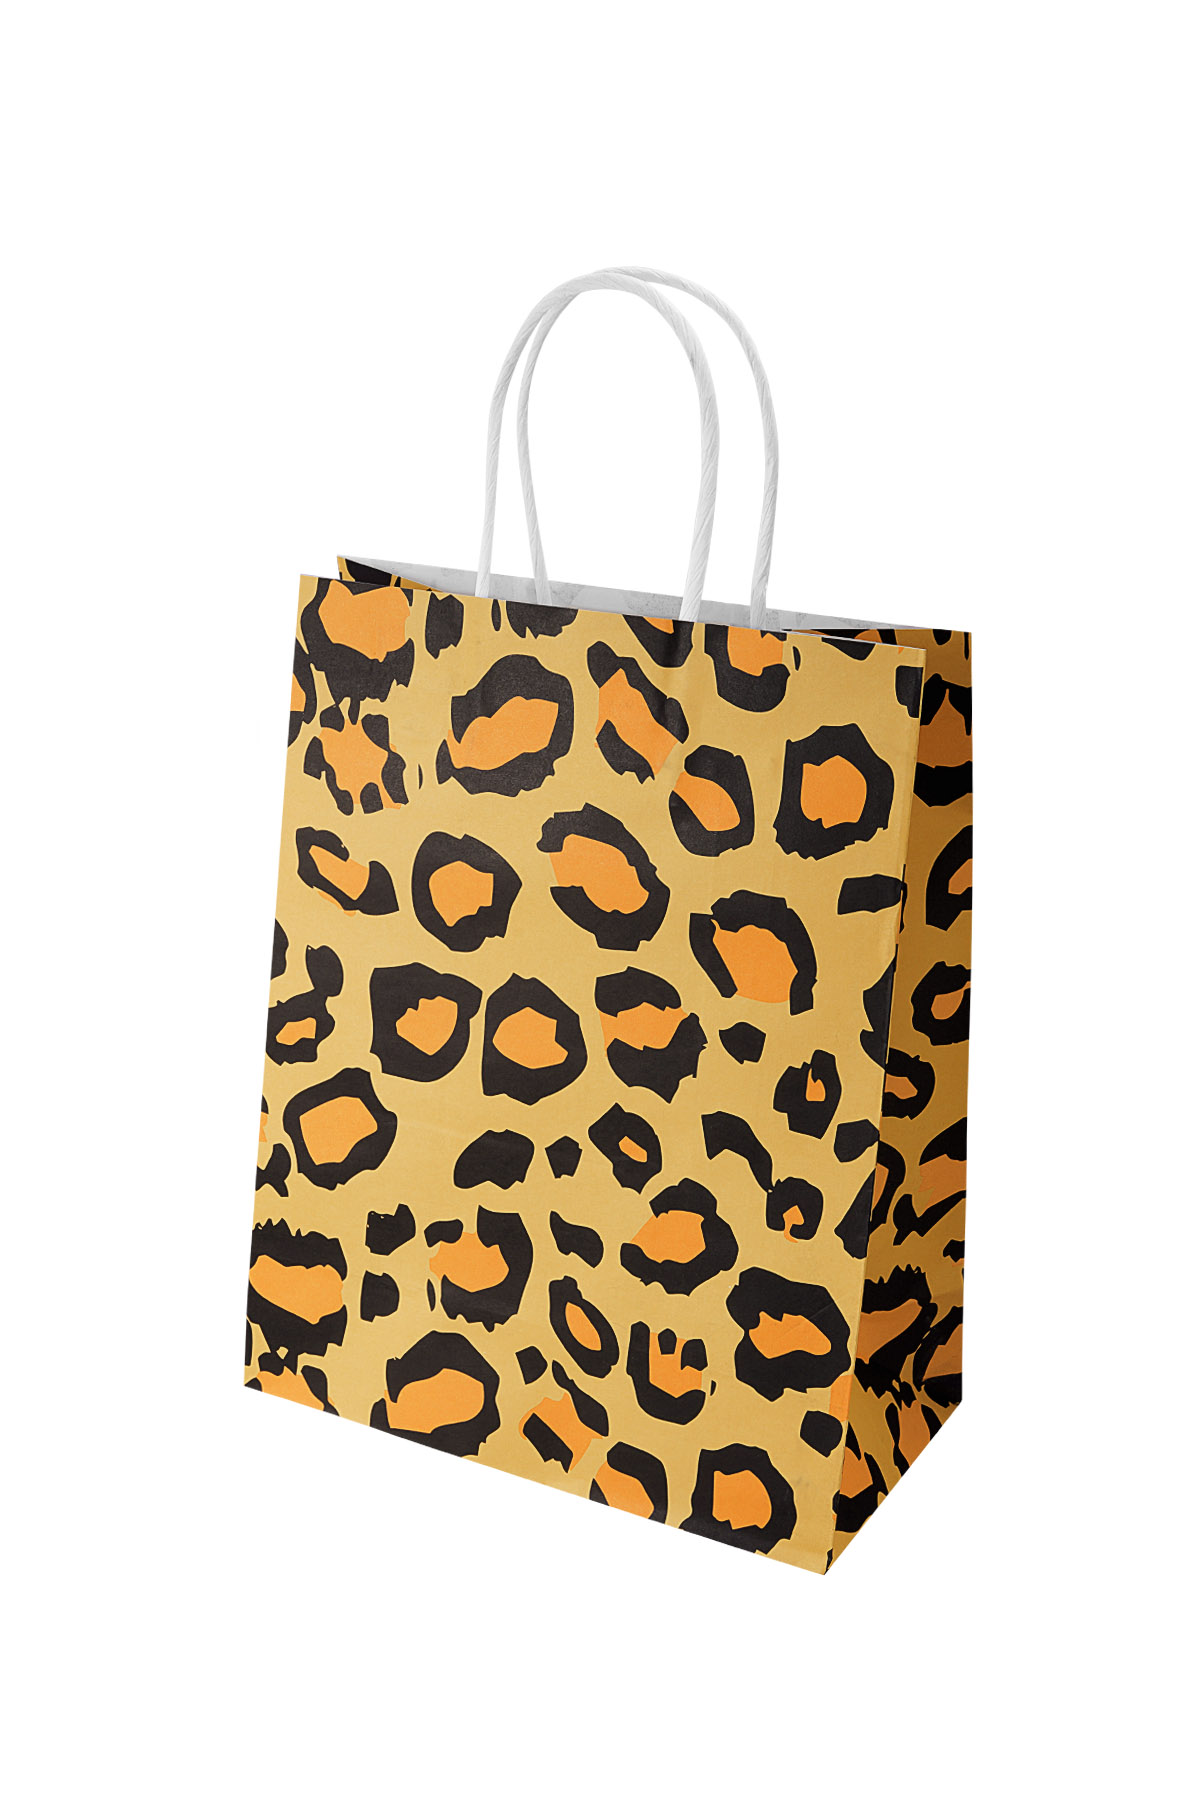 Bolsas estampado leopardo 50 piezas - Papel amarillo